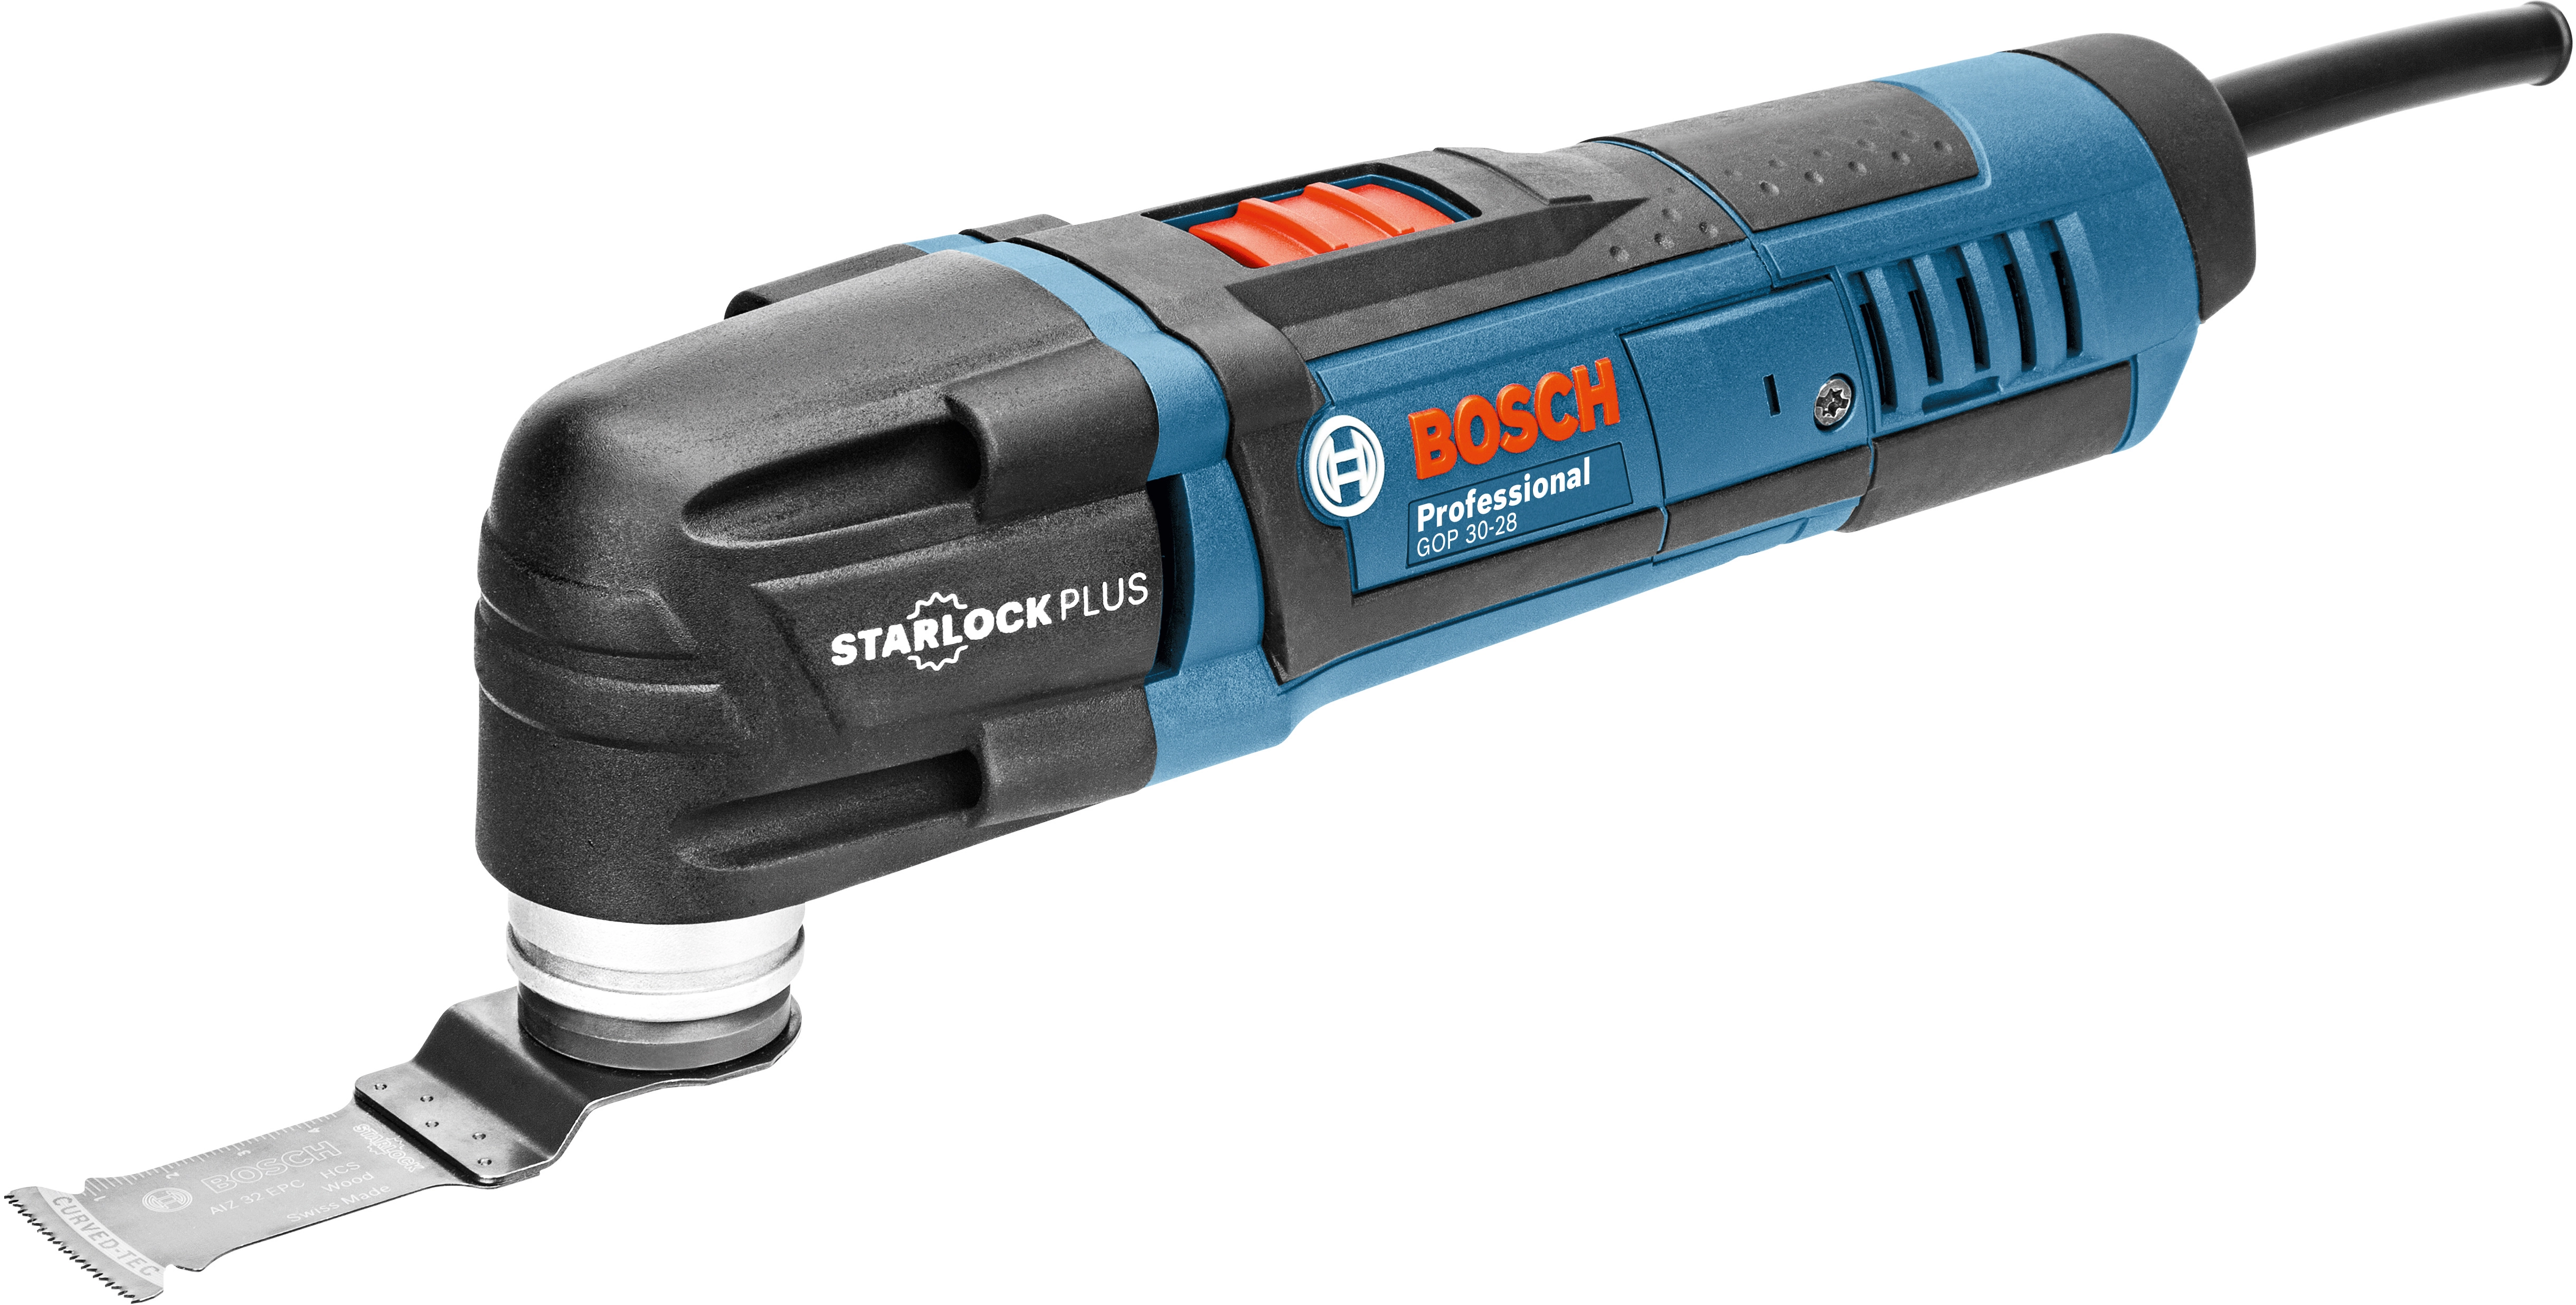 Bosch Professional Multi-Cutter GOP 30-28 300 W